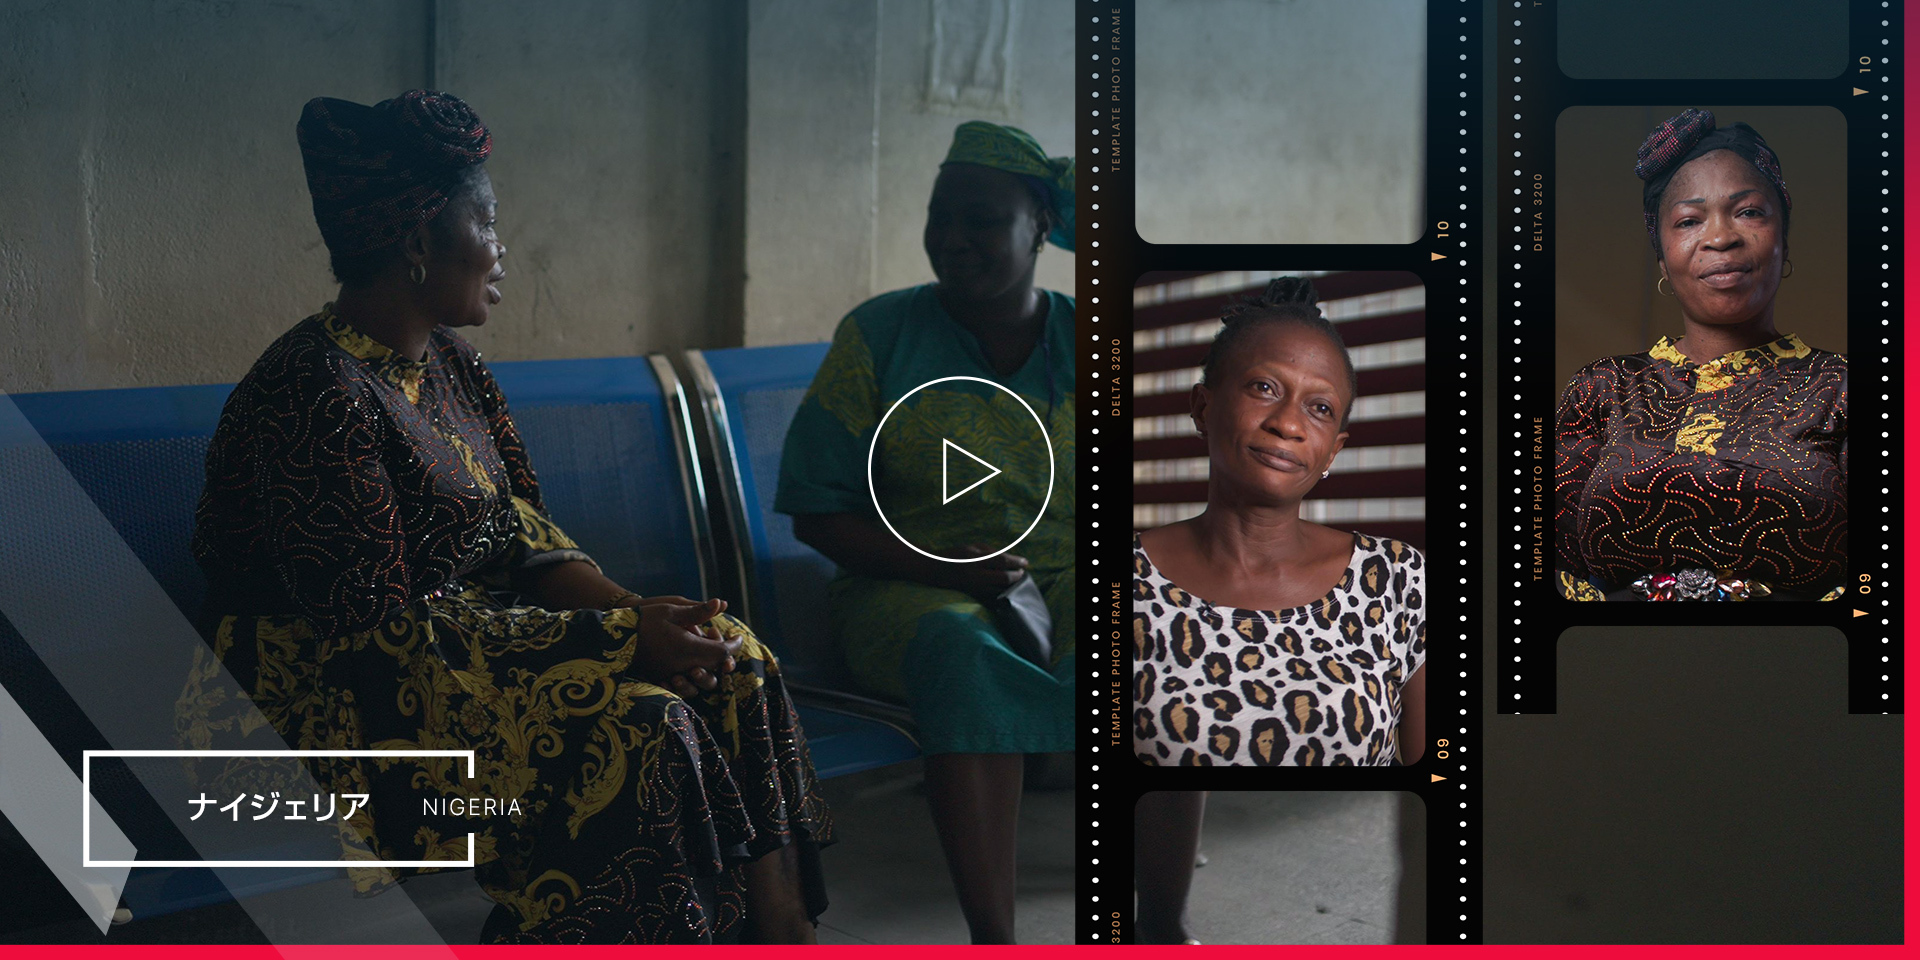 ナイジェリアでエイズと戦い、エイズと戦う人の支援をするメンターマザーの動画